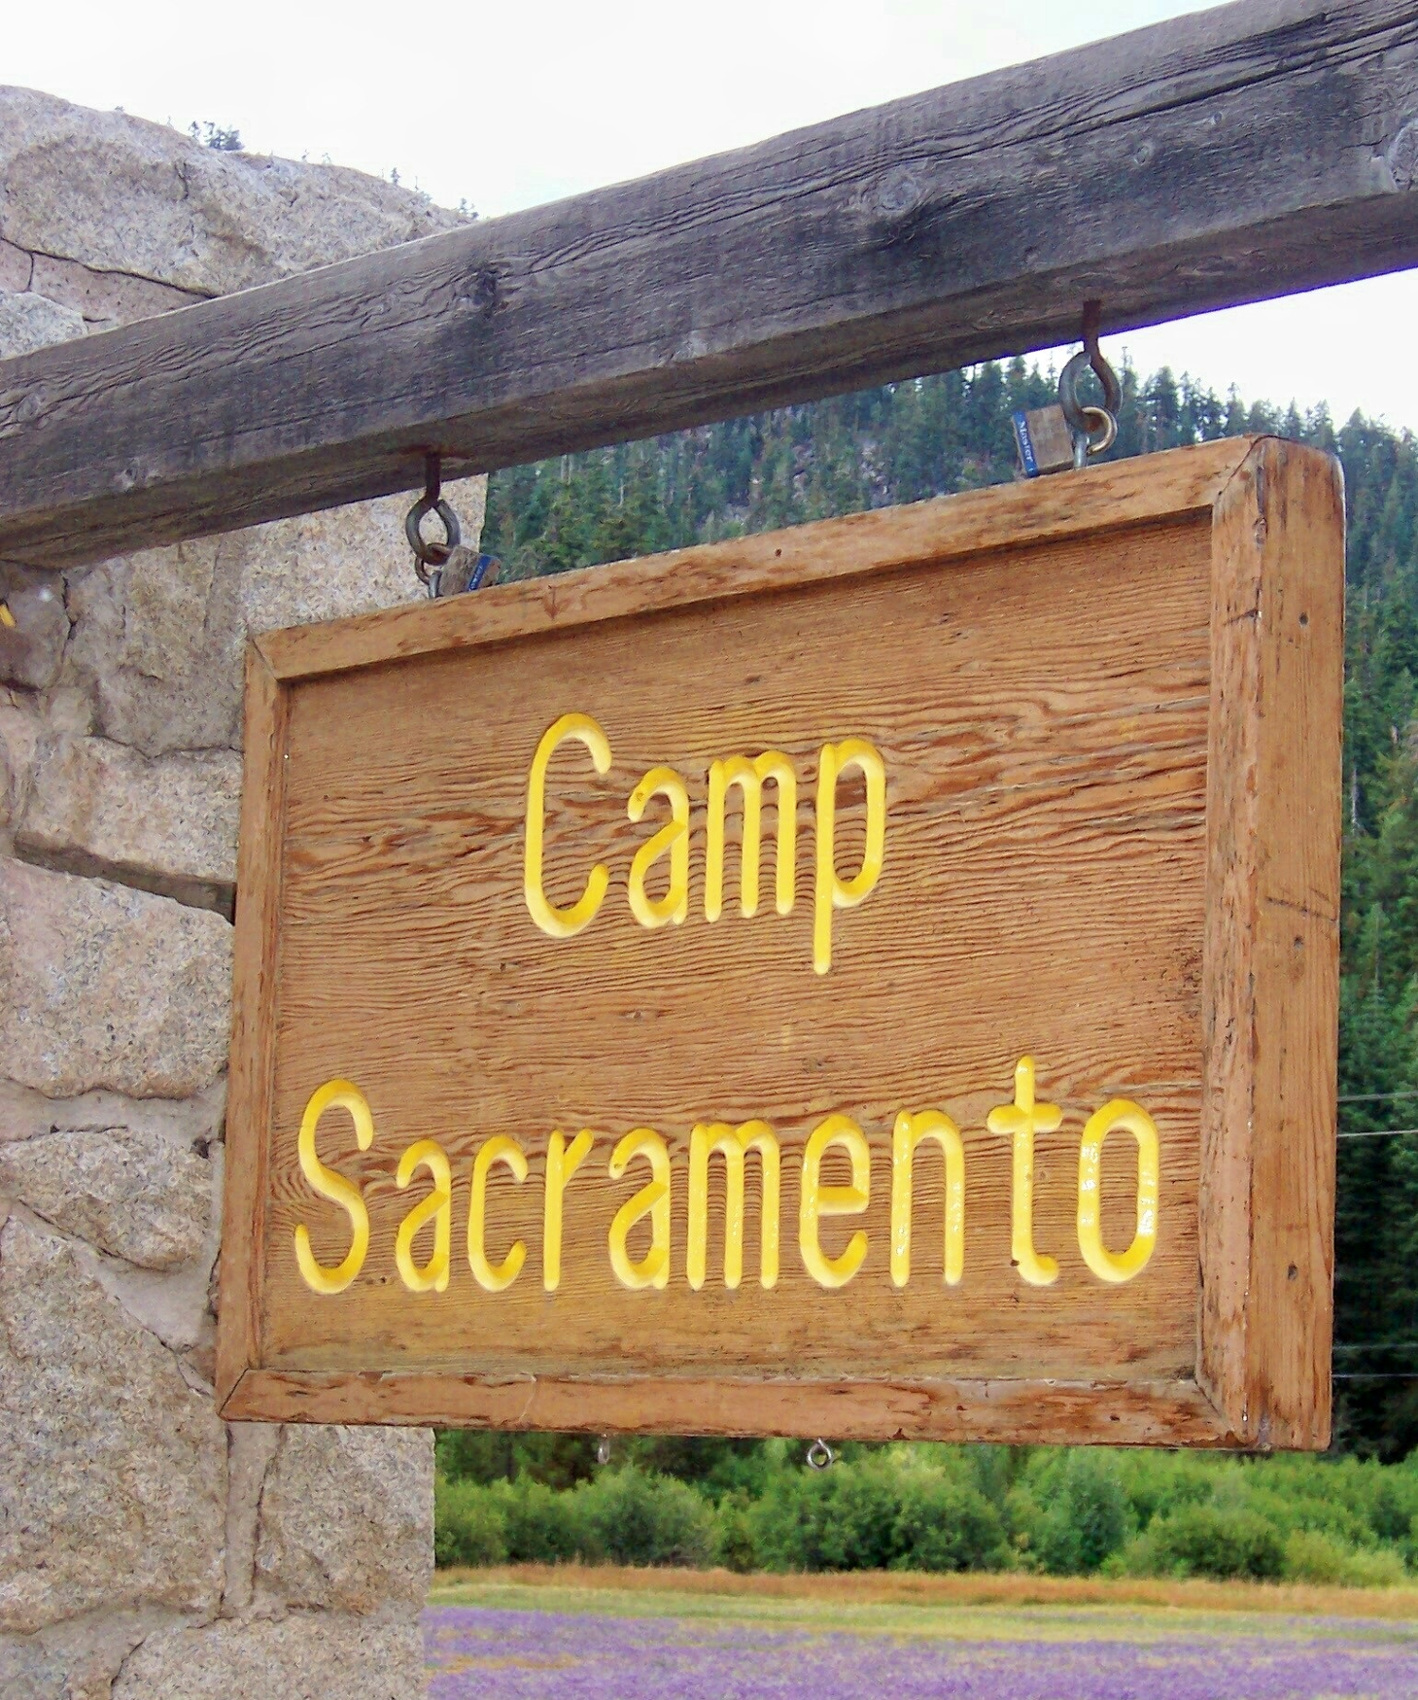 Image of a Camp Sacramento sign